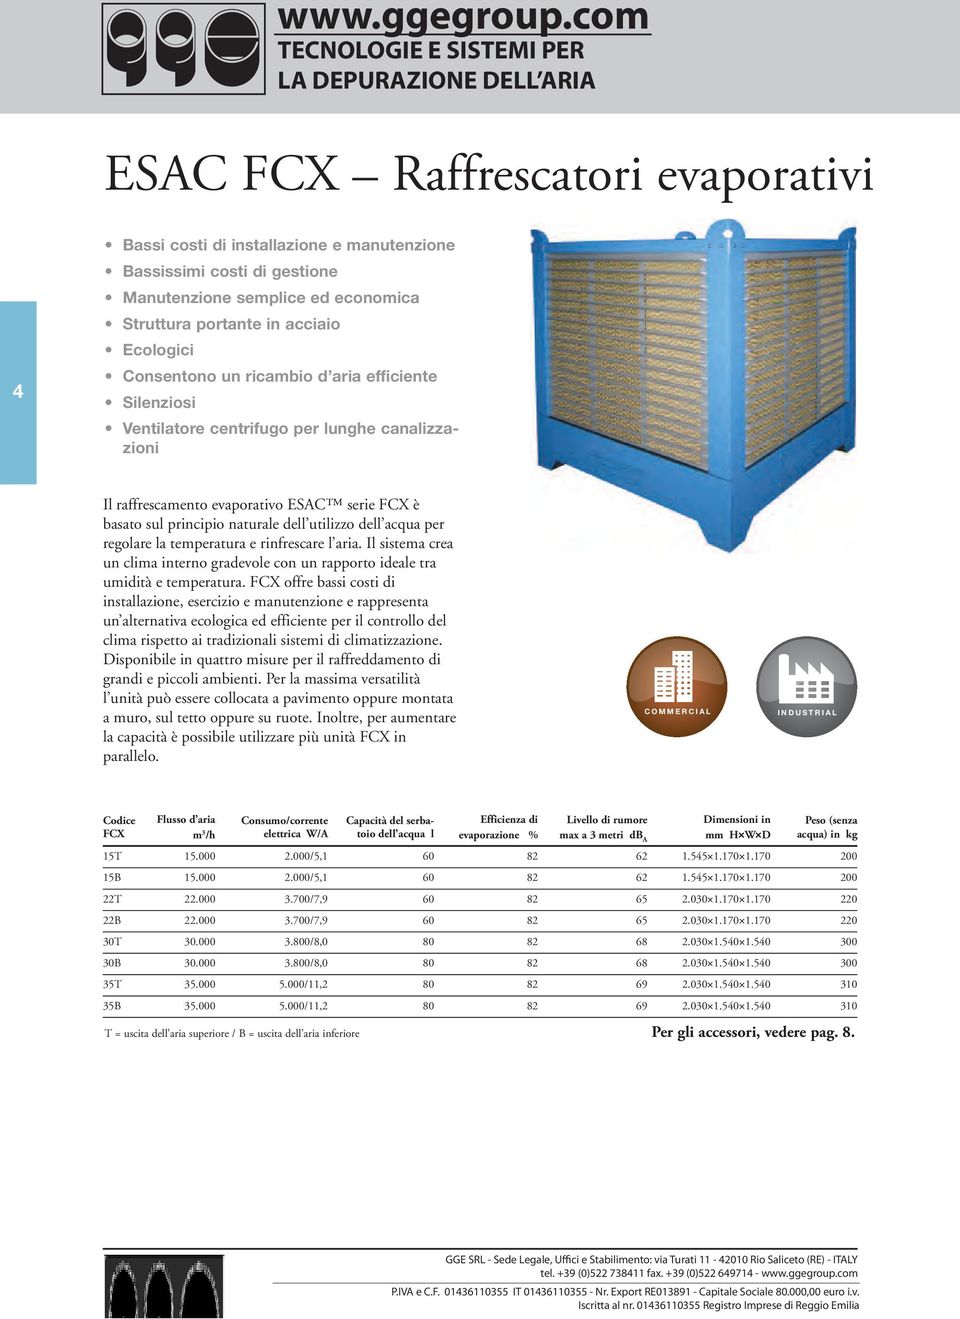 acciaio Ecologici Consentono un ricambio d aria efficiente Silenziosi Ventilatore centrifugo per lunghe canalizzazioni Il raffrescamento evaporativo ESAC serie FCX è basato sul principio naturale